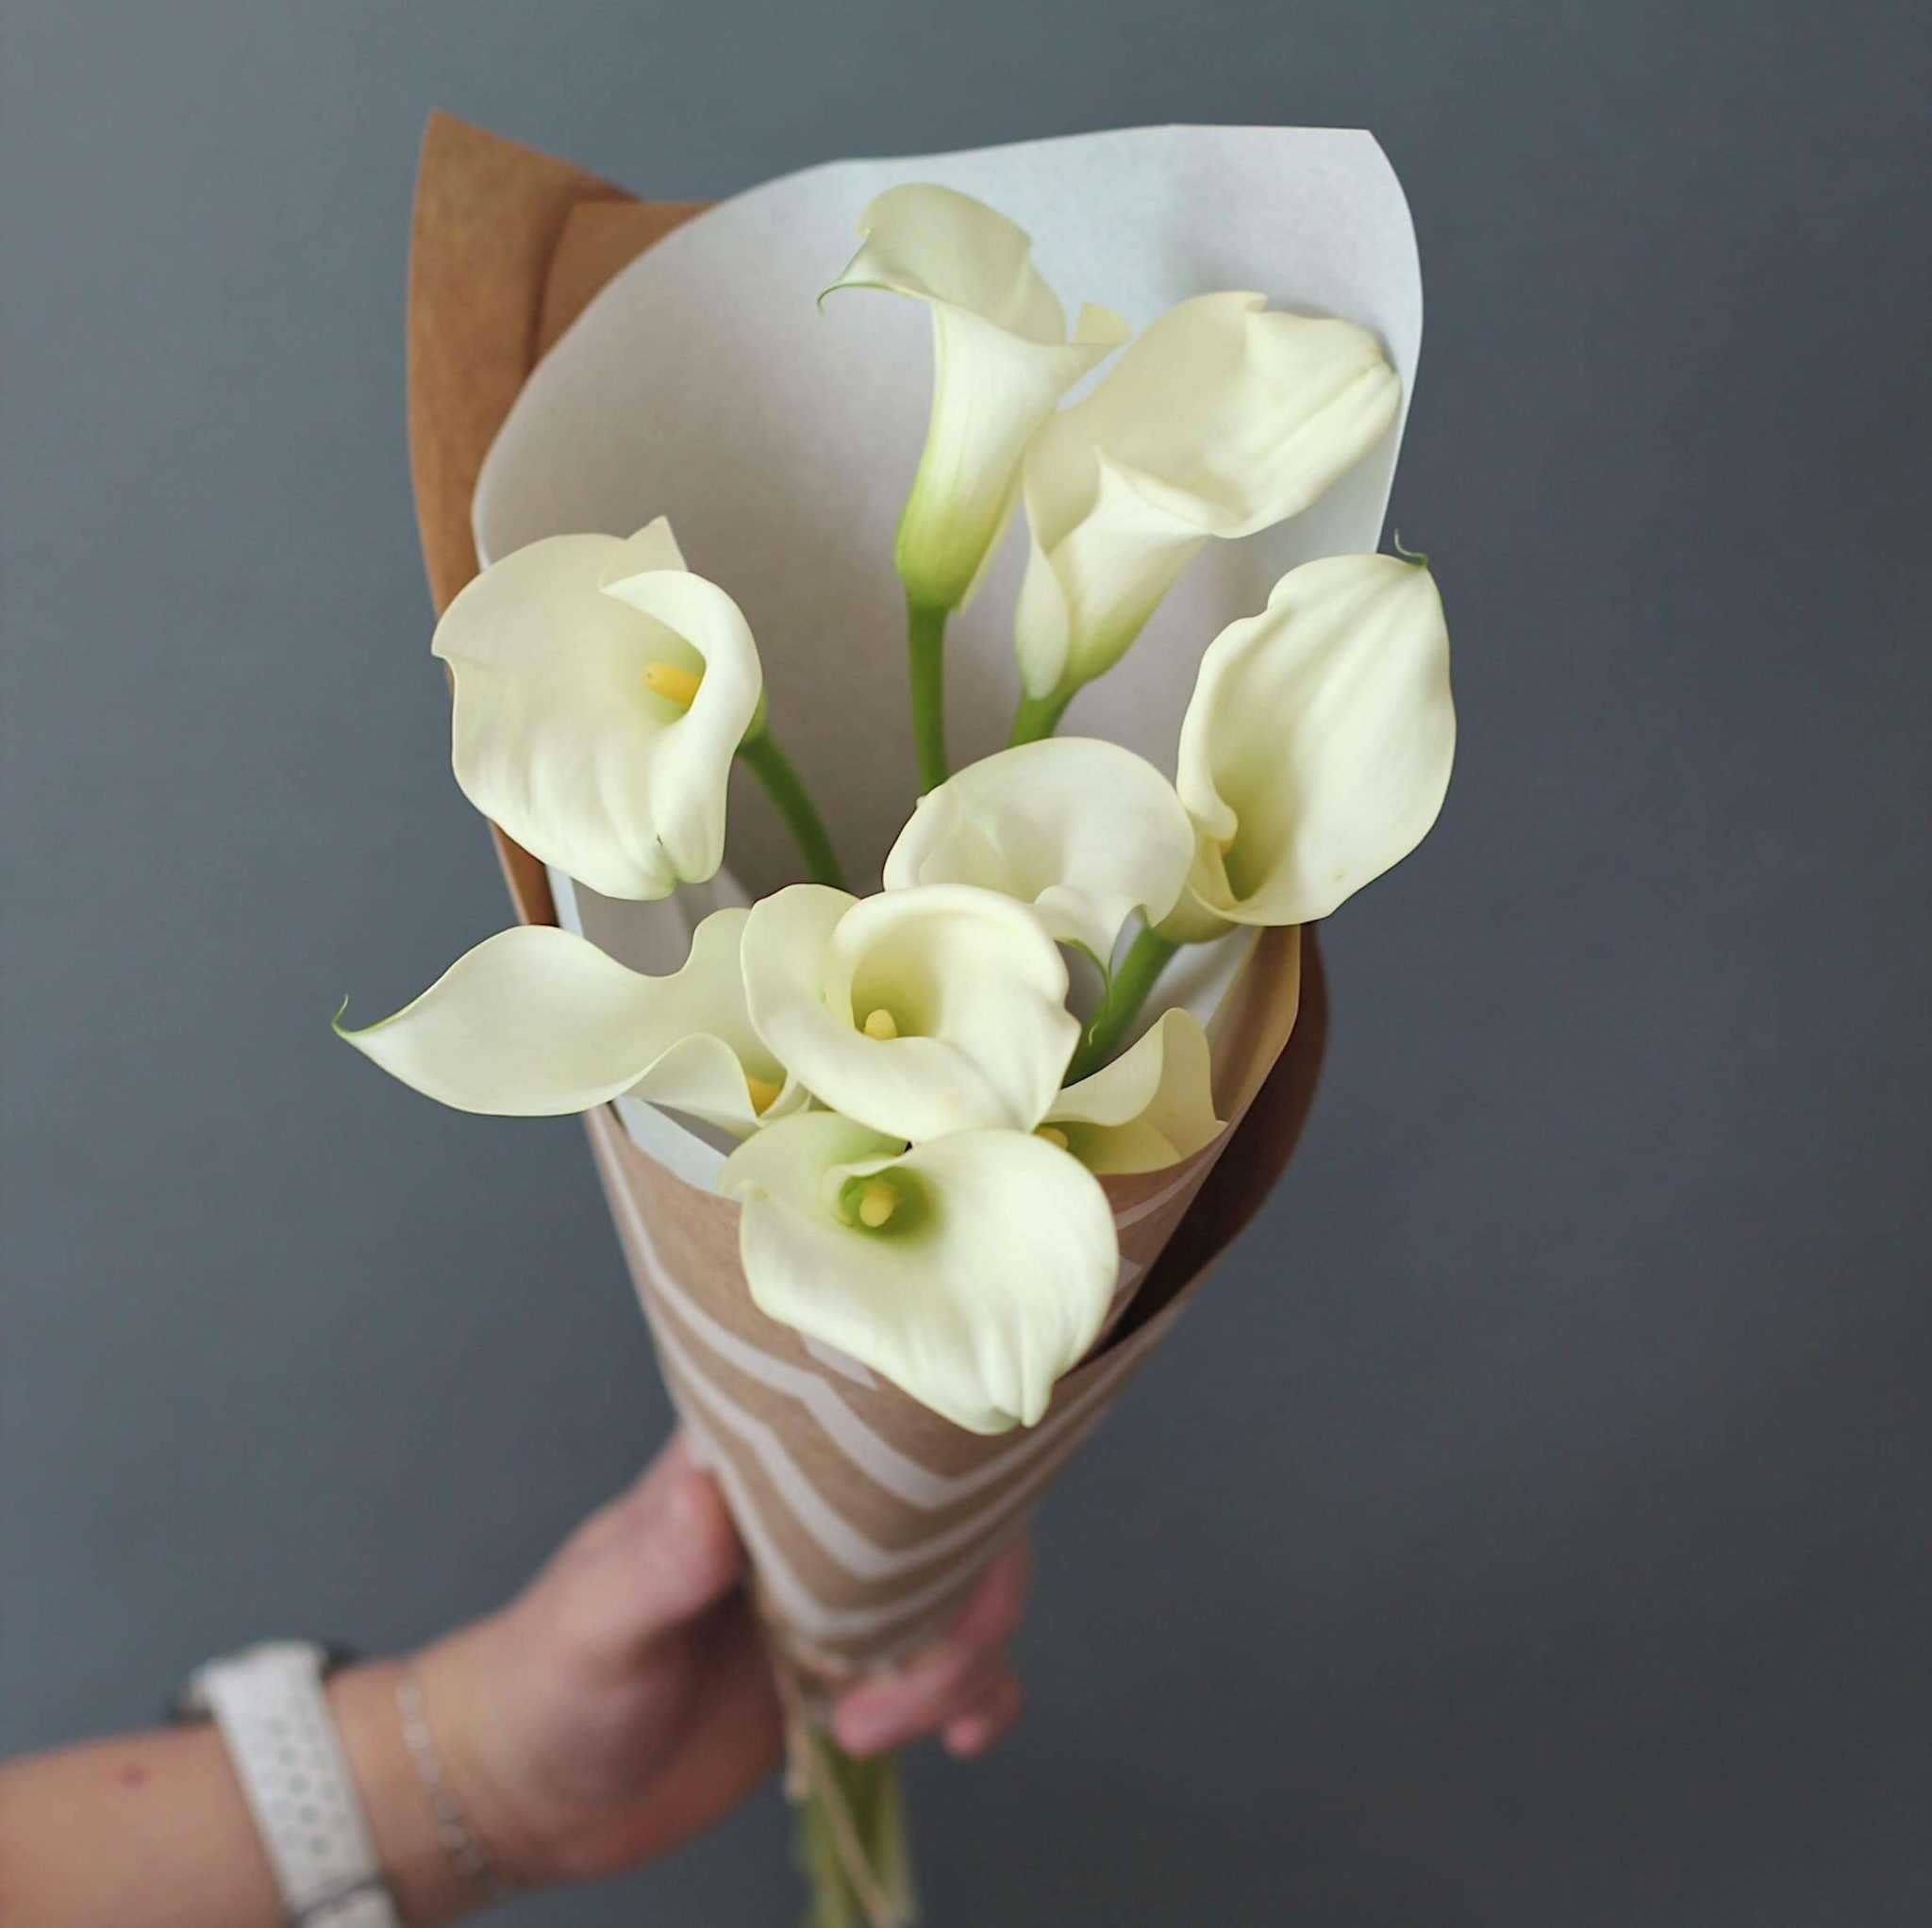 Какие цветы подарить Какой букет невесты заказать, чтобы выглядеть стильно и модно Все тенденции флористики в одной статье Фото красивых букетов и идей по оформлению